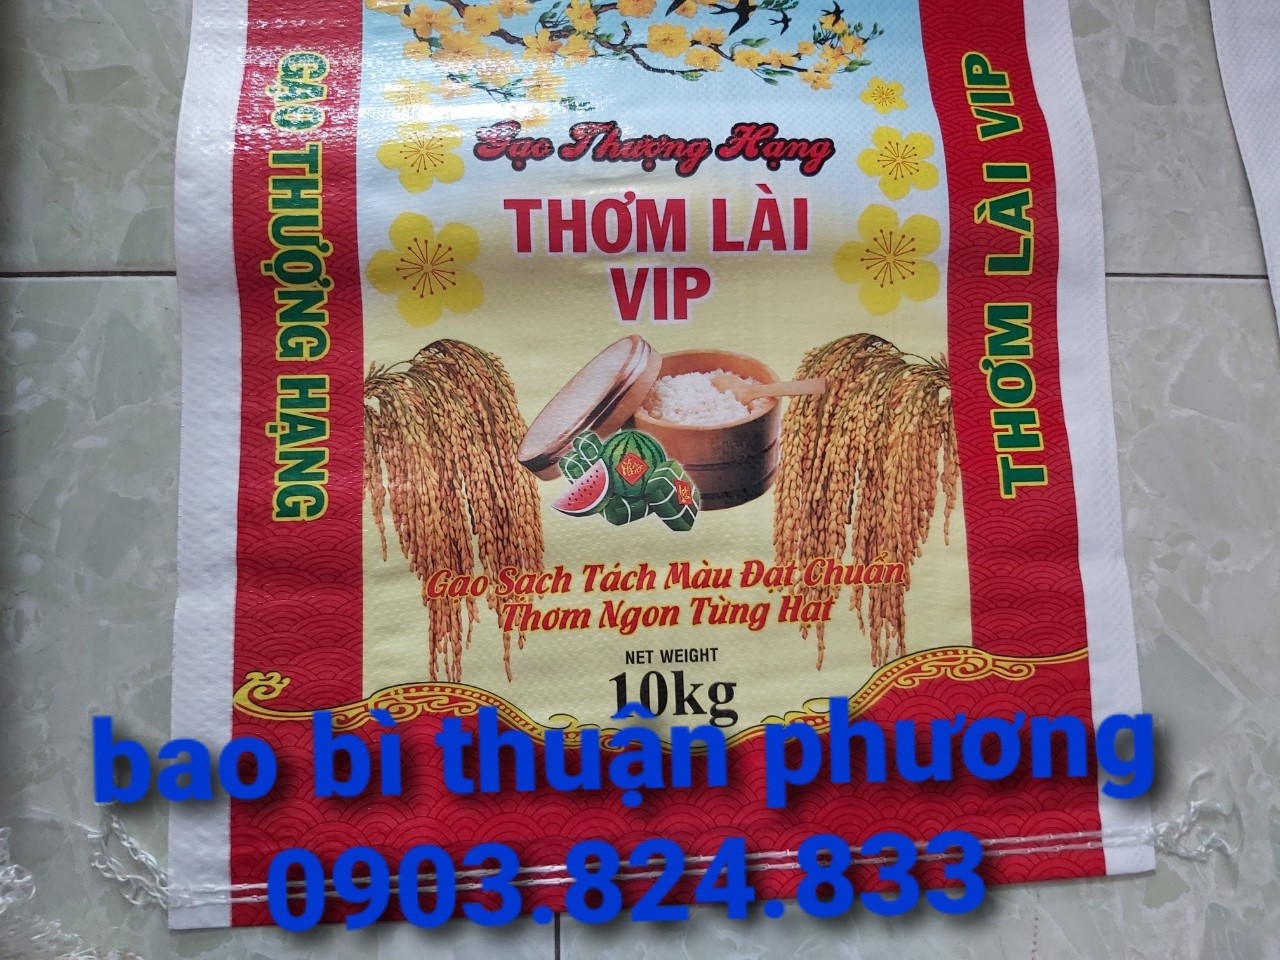 túi đựng gạo thơm lài vip 10kg giá rẻ tại kho quận 8